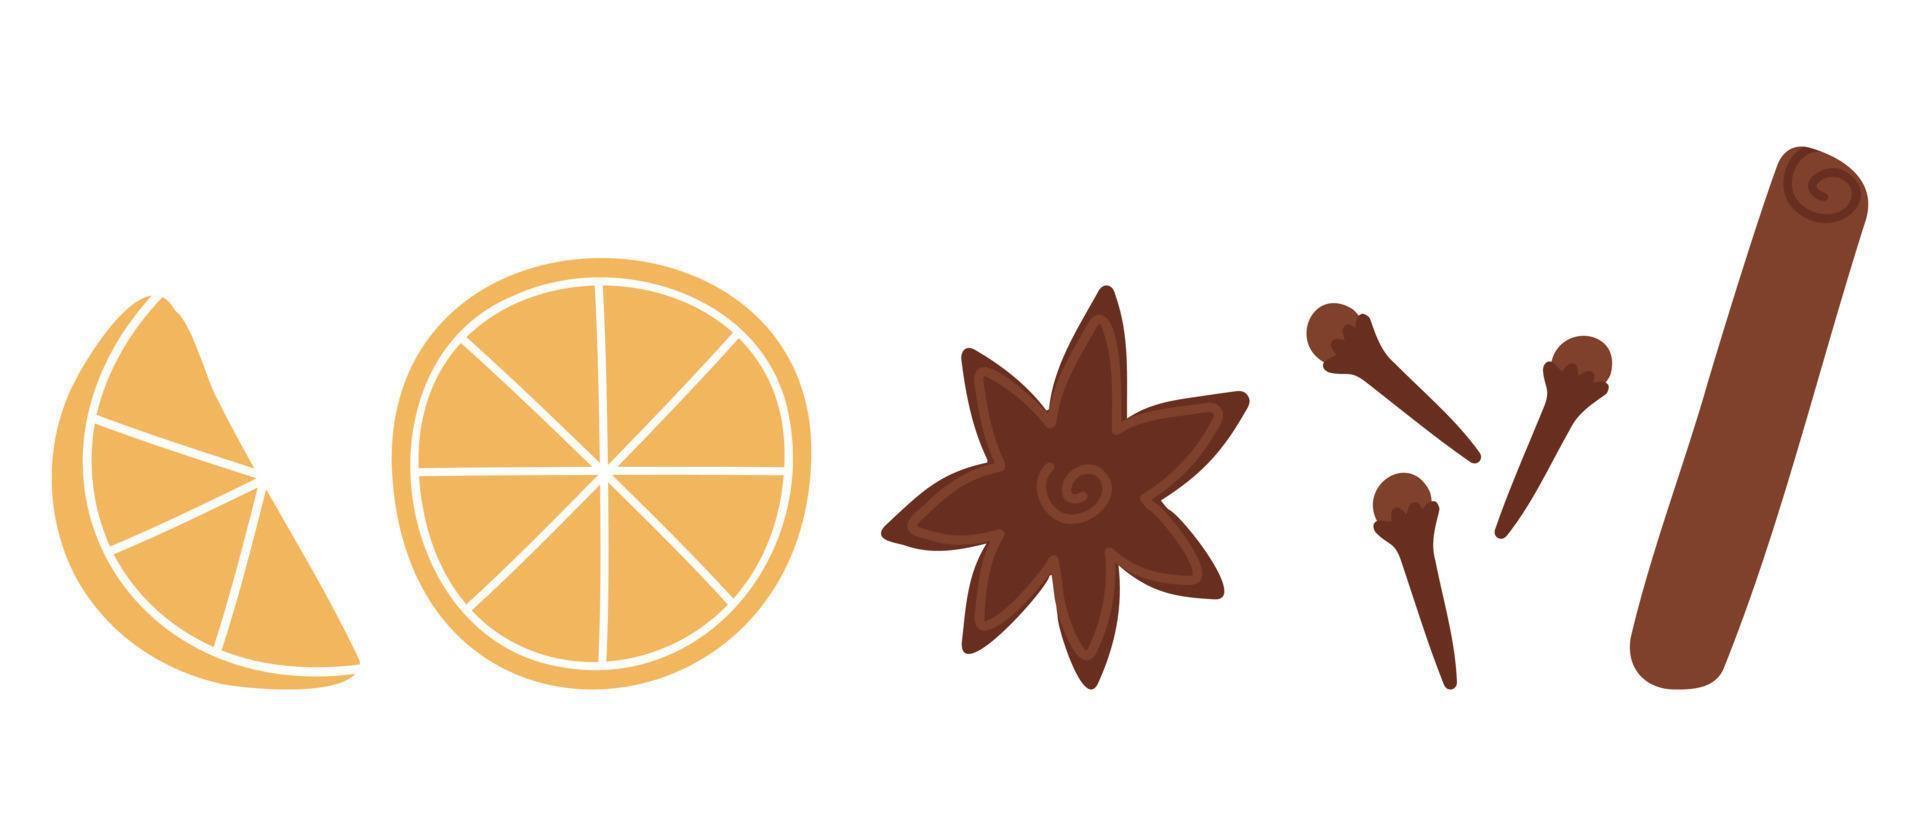 dessin animé vin chaud ingrédients bâton de cannelle, orange, étoile d'anis pour la décoration d'automne et de noël. vecteur